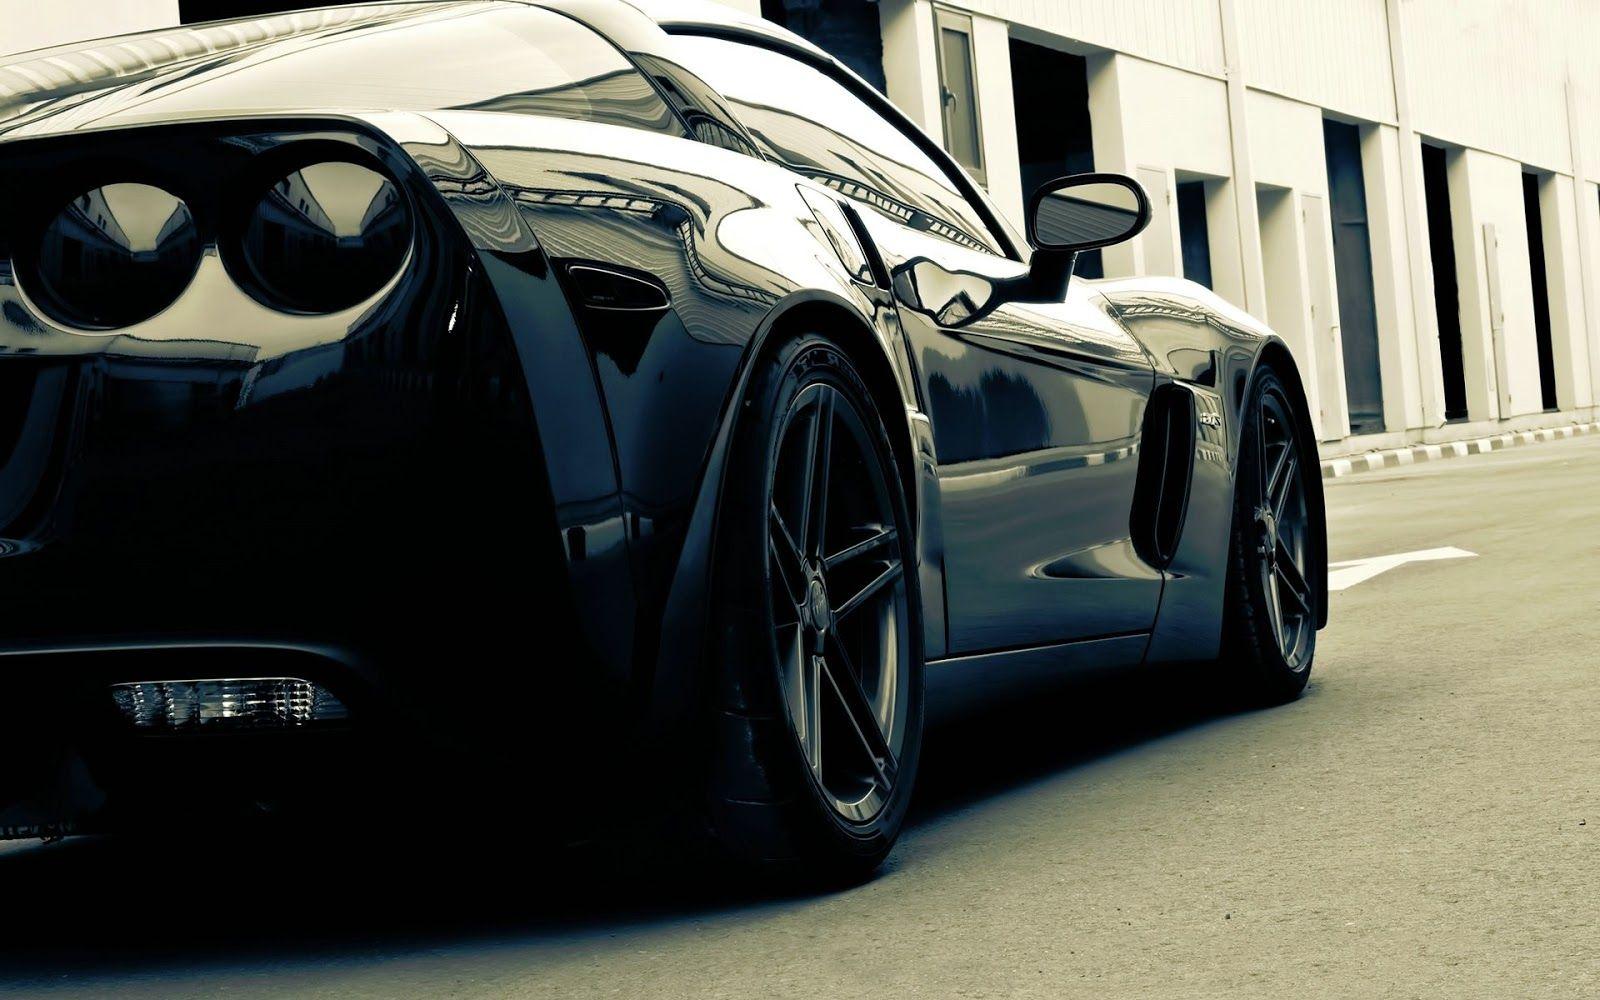 Black Corvette Sport Car HD Wallpaper Desktop Full For Of Smartphone